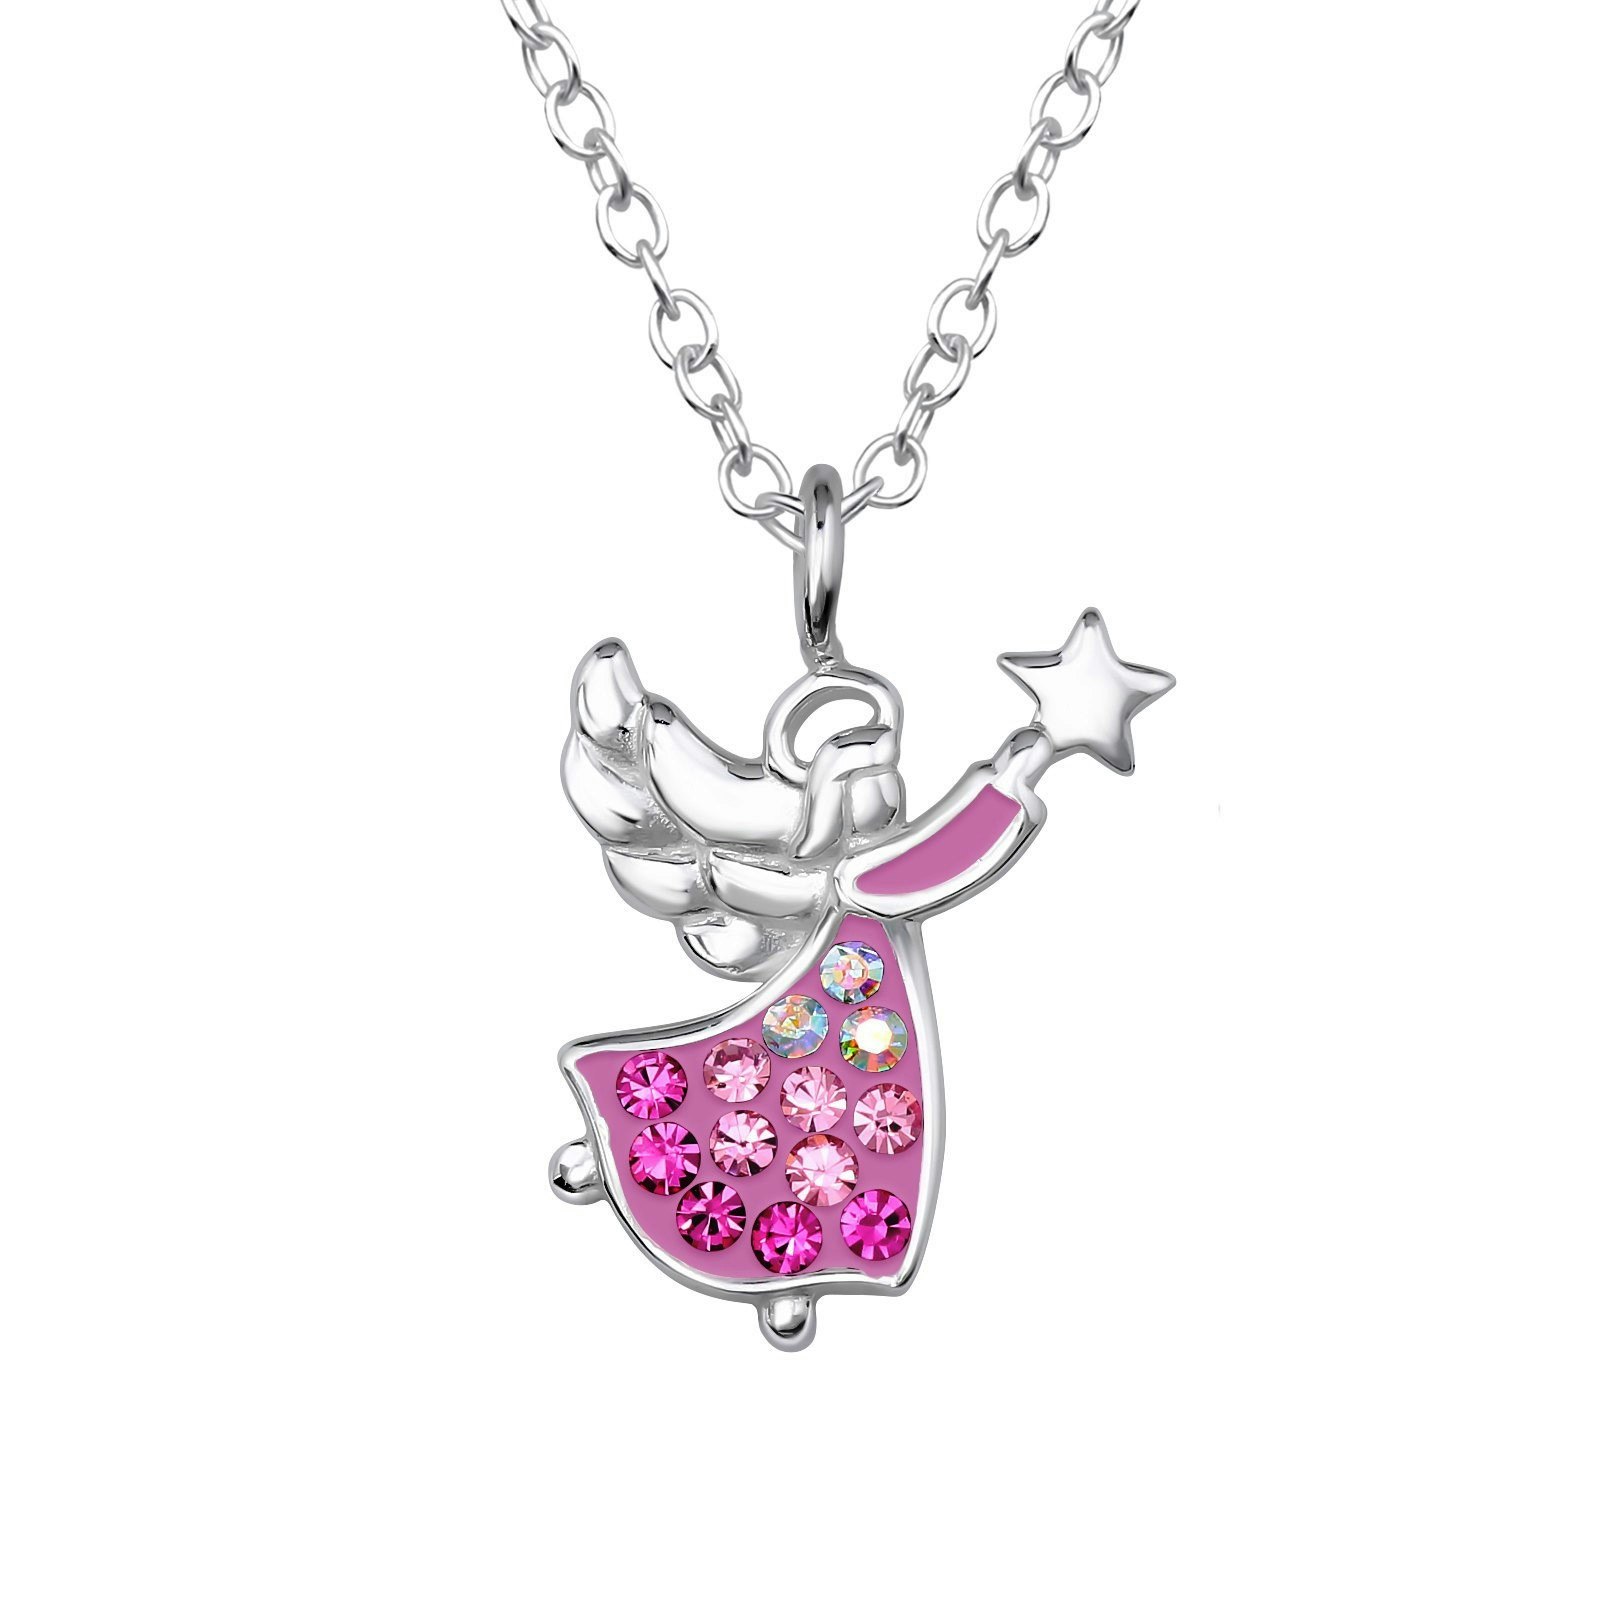 Barnhalsband glittrig rosa Ängel som håller i en stjärna - sött barnsmycke i äkta 925 sterling silver